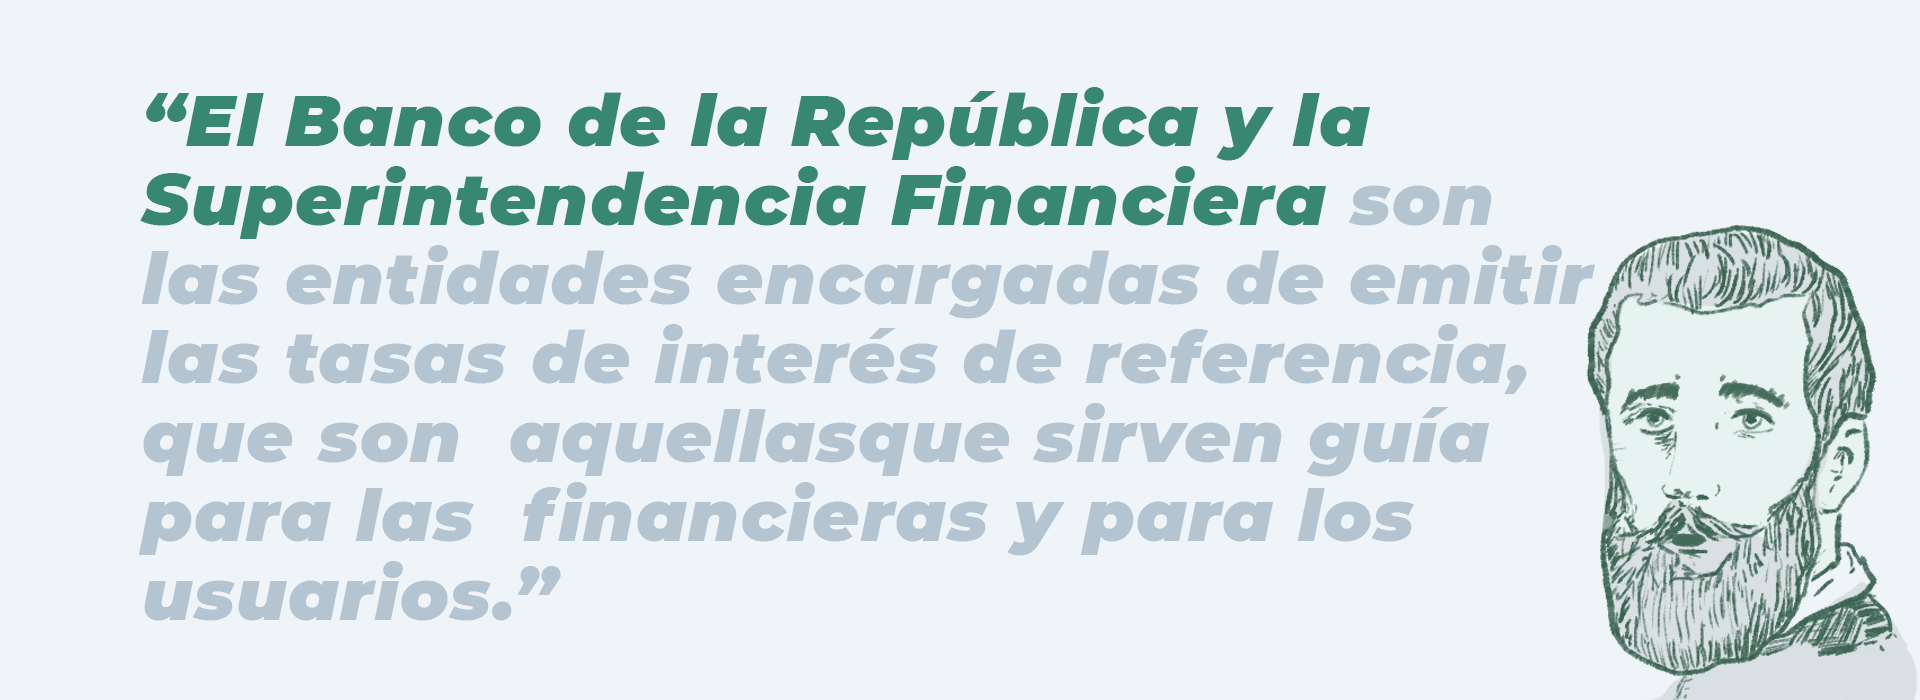 El Banco de la República y la Superintendencia Financiera